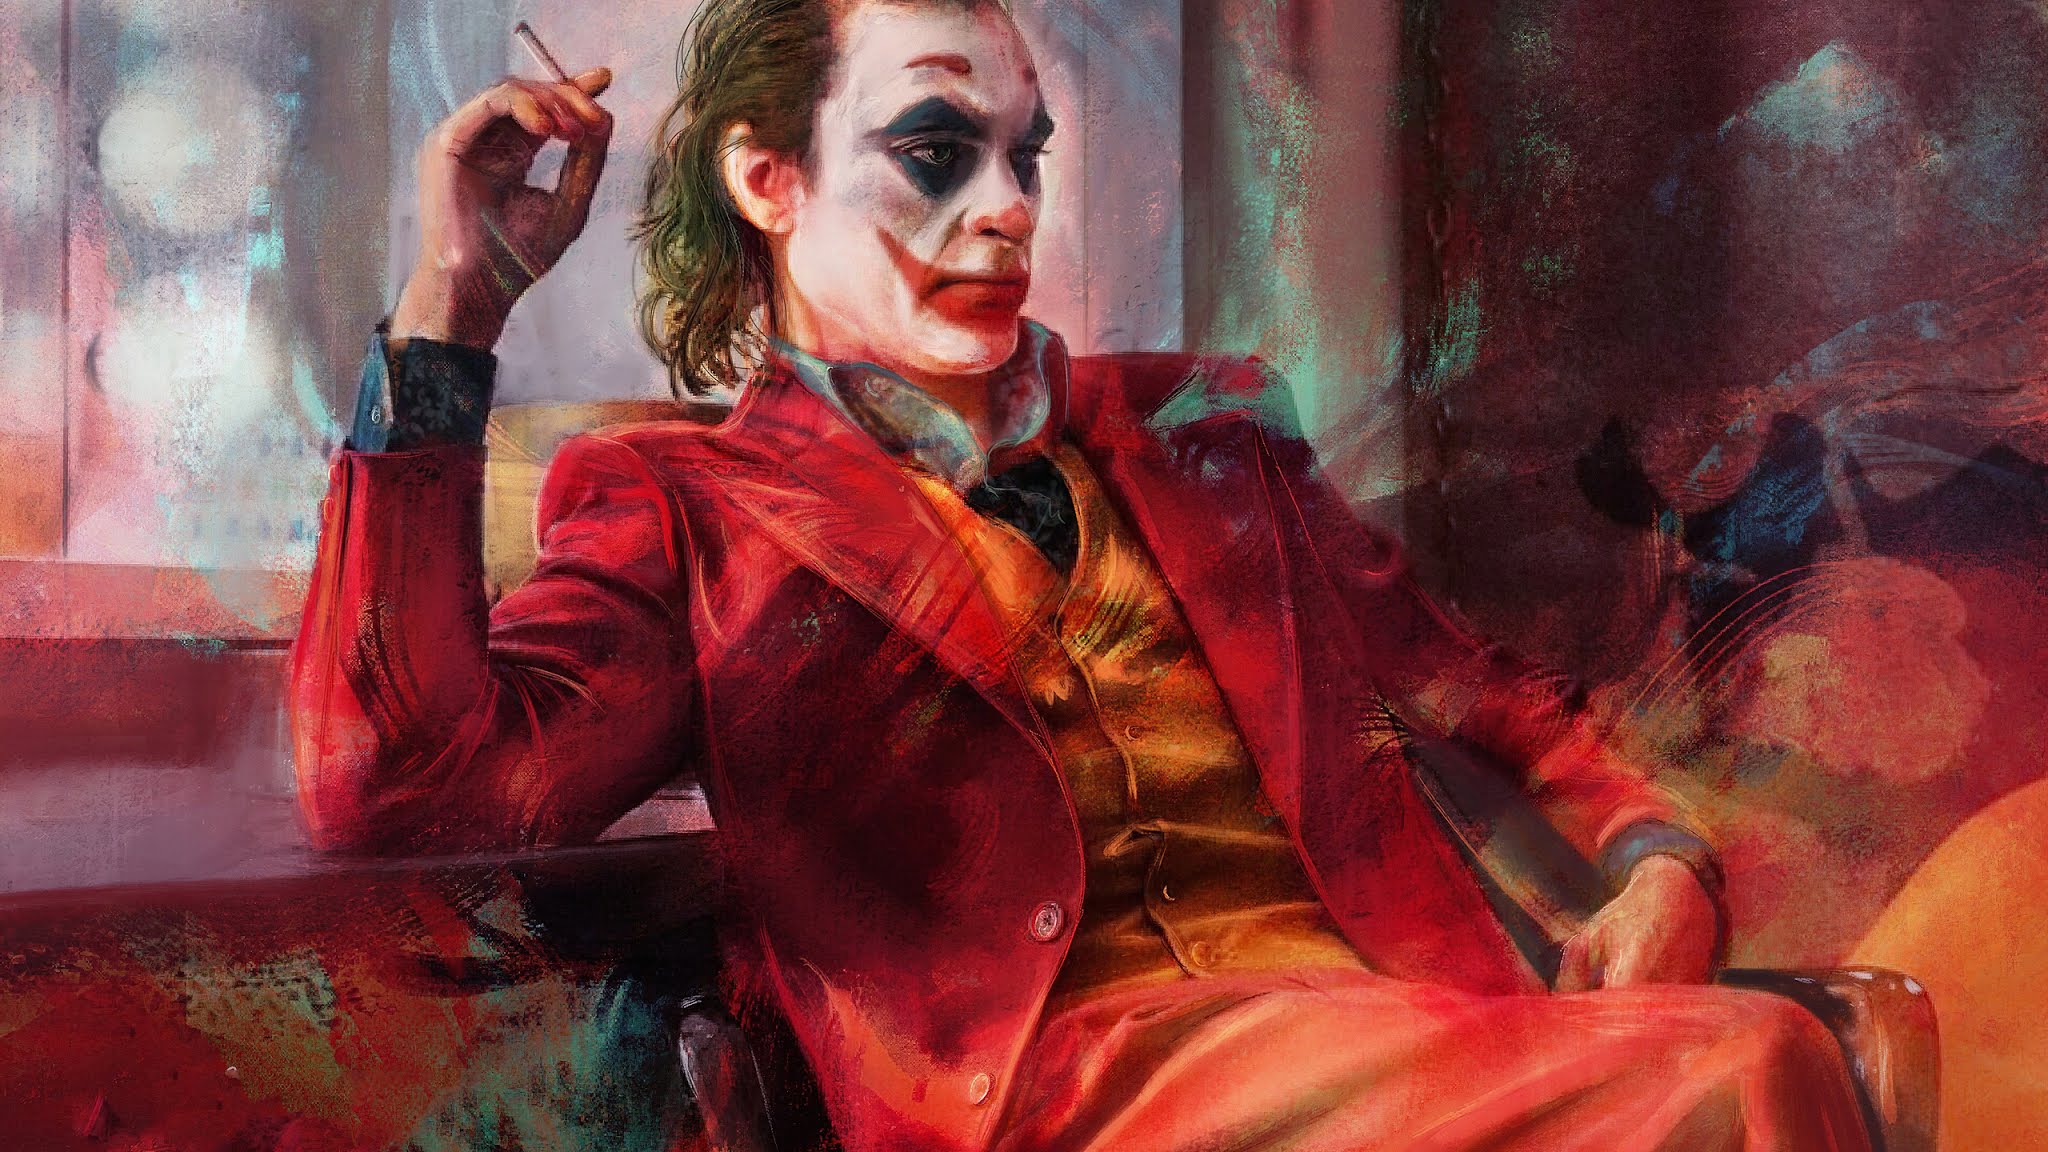 Joker 2019 Artwork